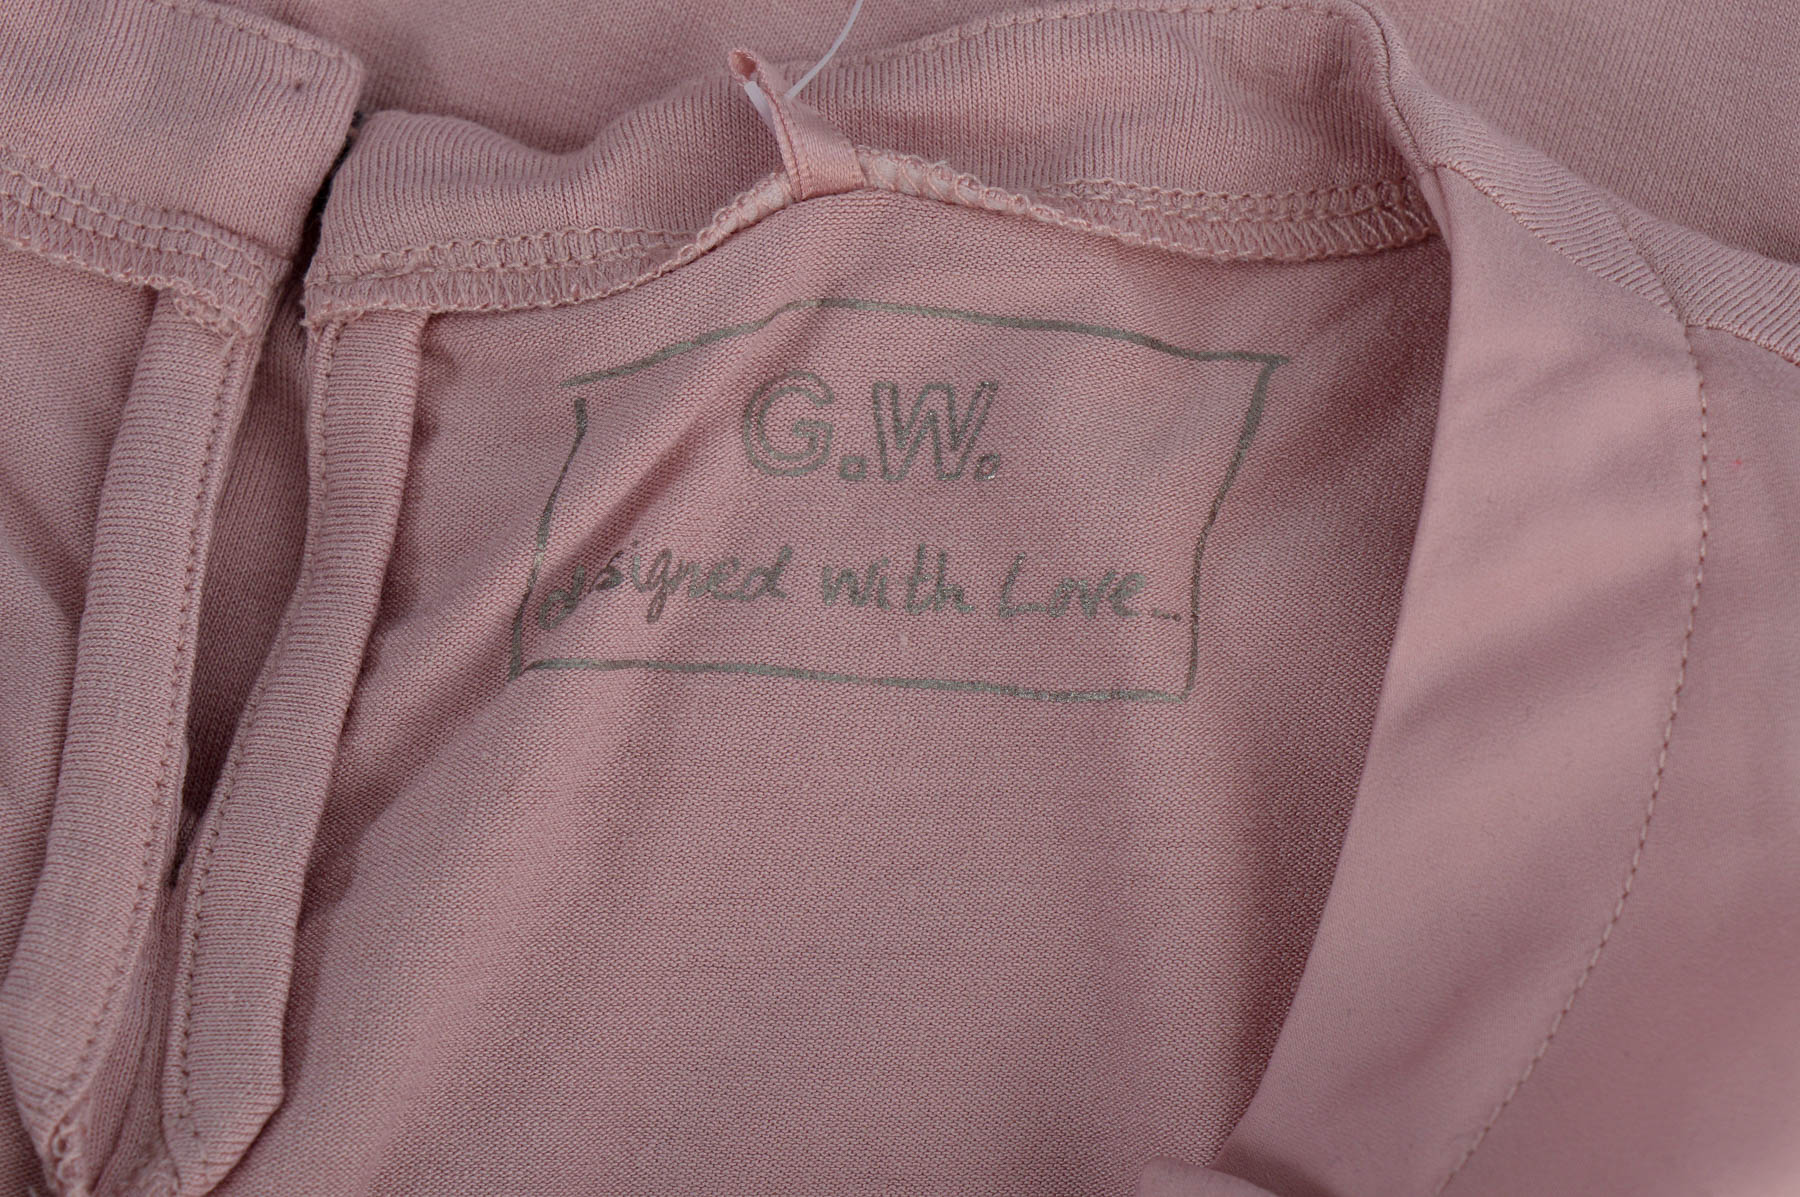 Дамска риза - G.W. - 2